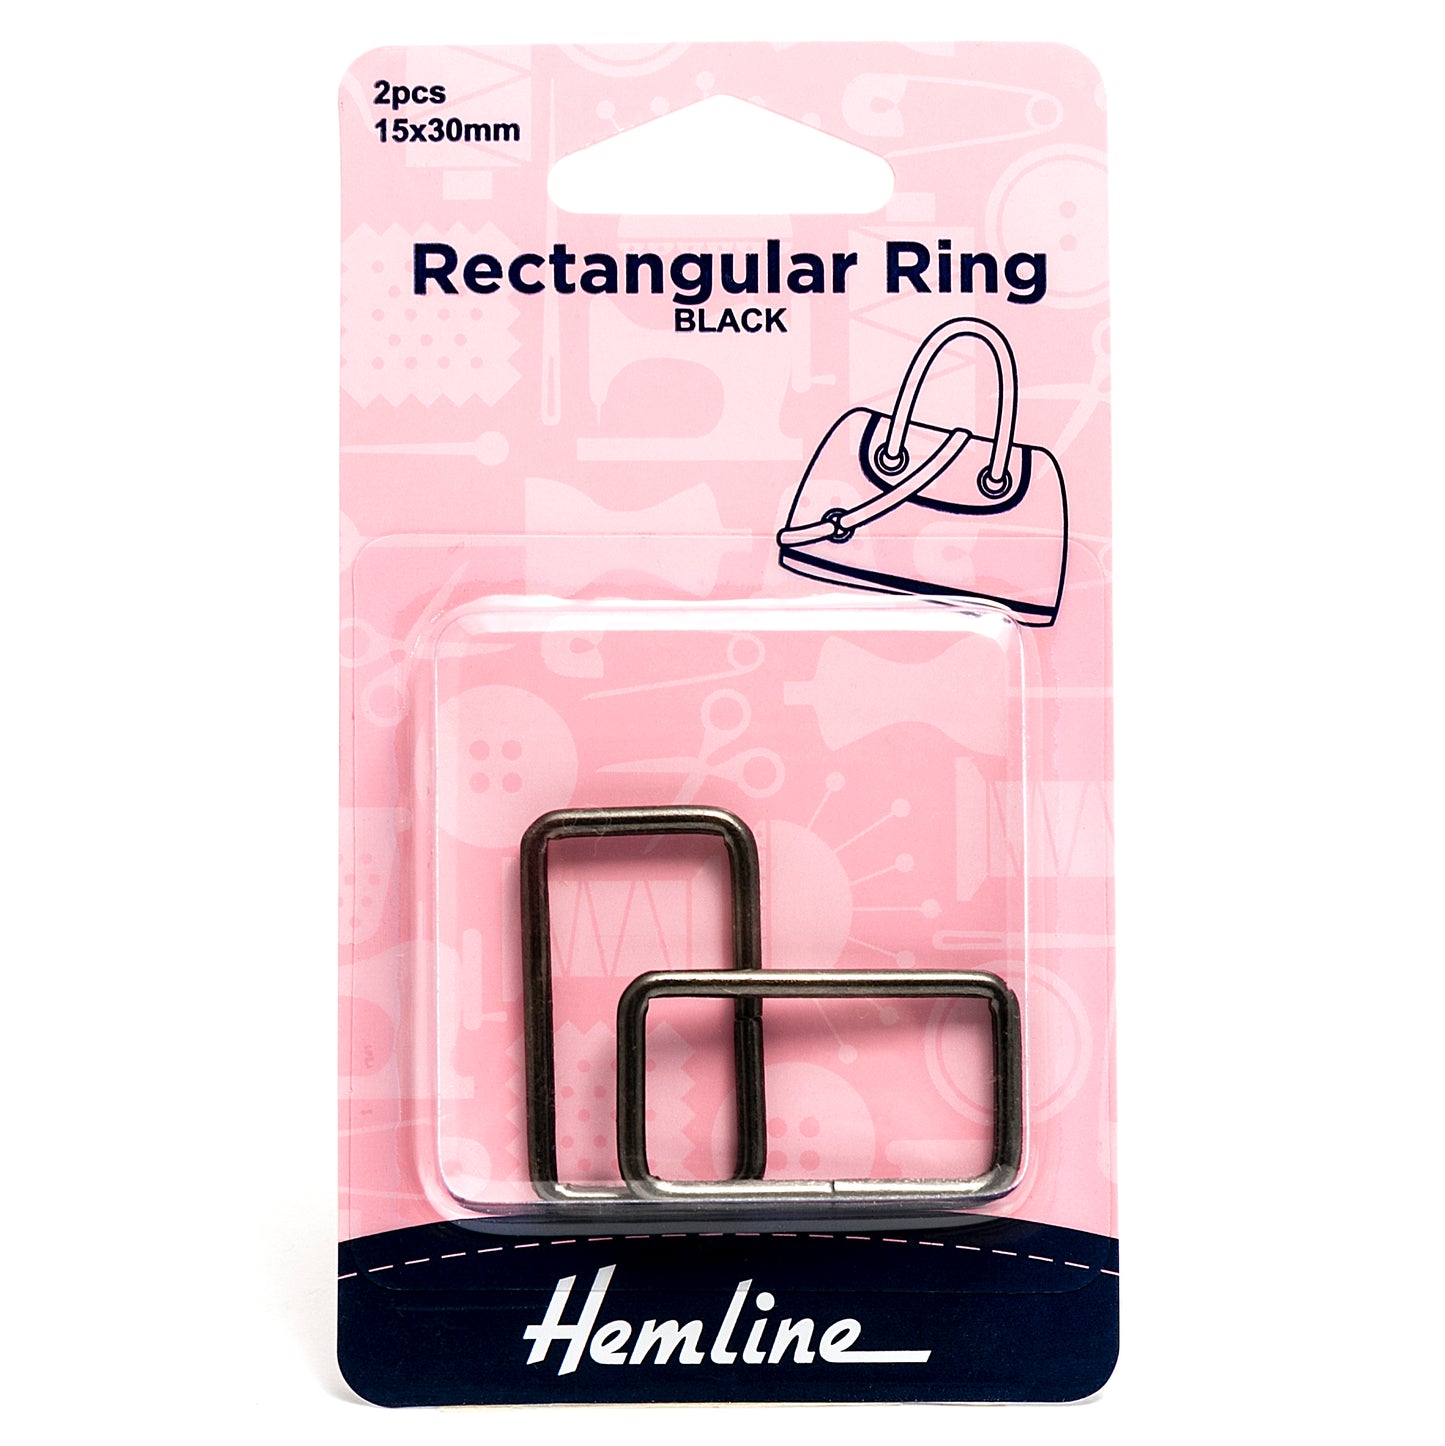 Rectangular Ring: 30mm: Nickel Black: 2 Pieces